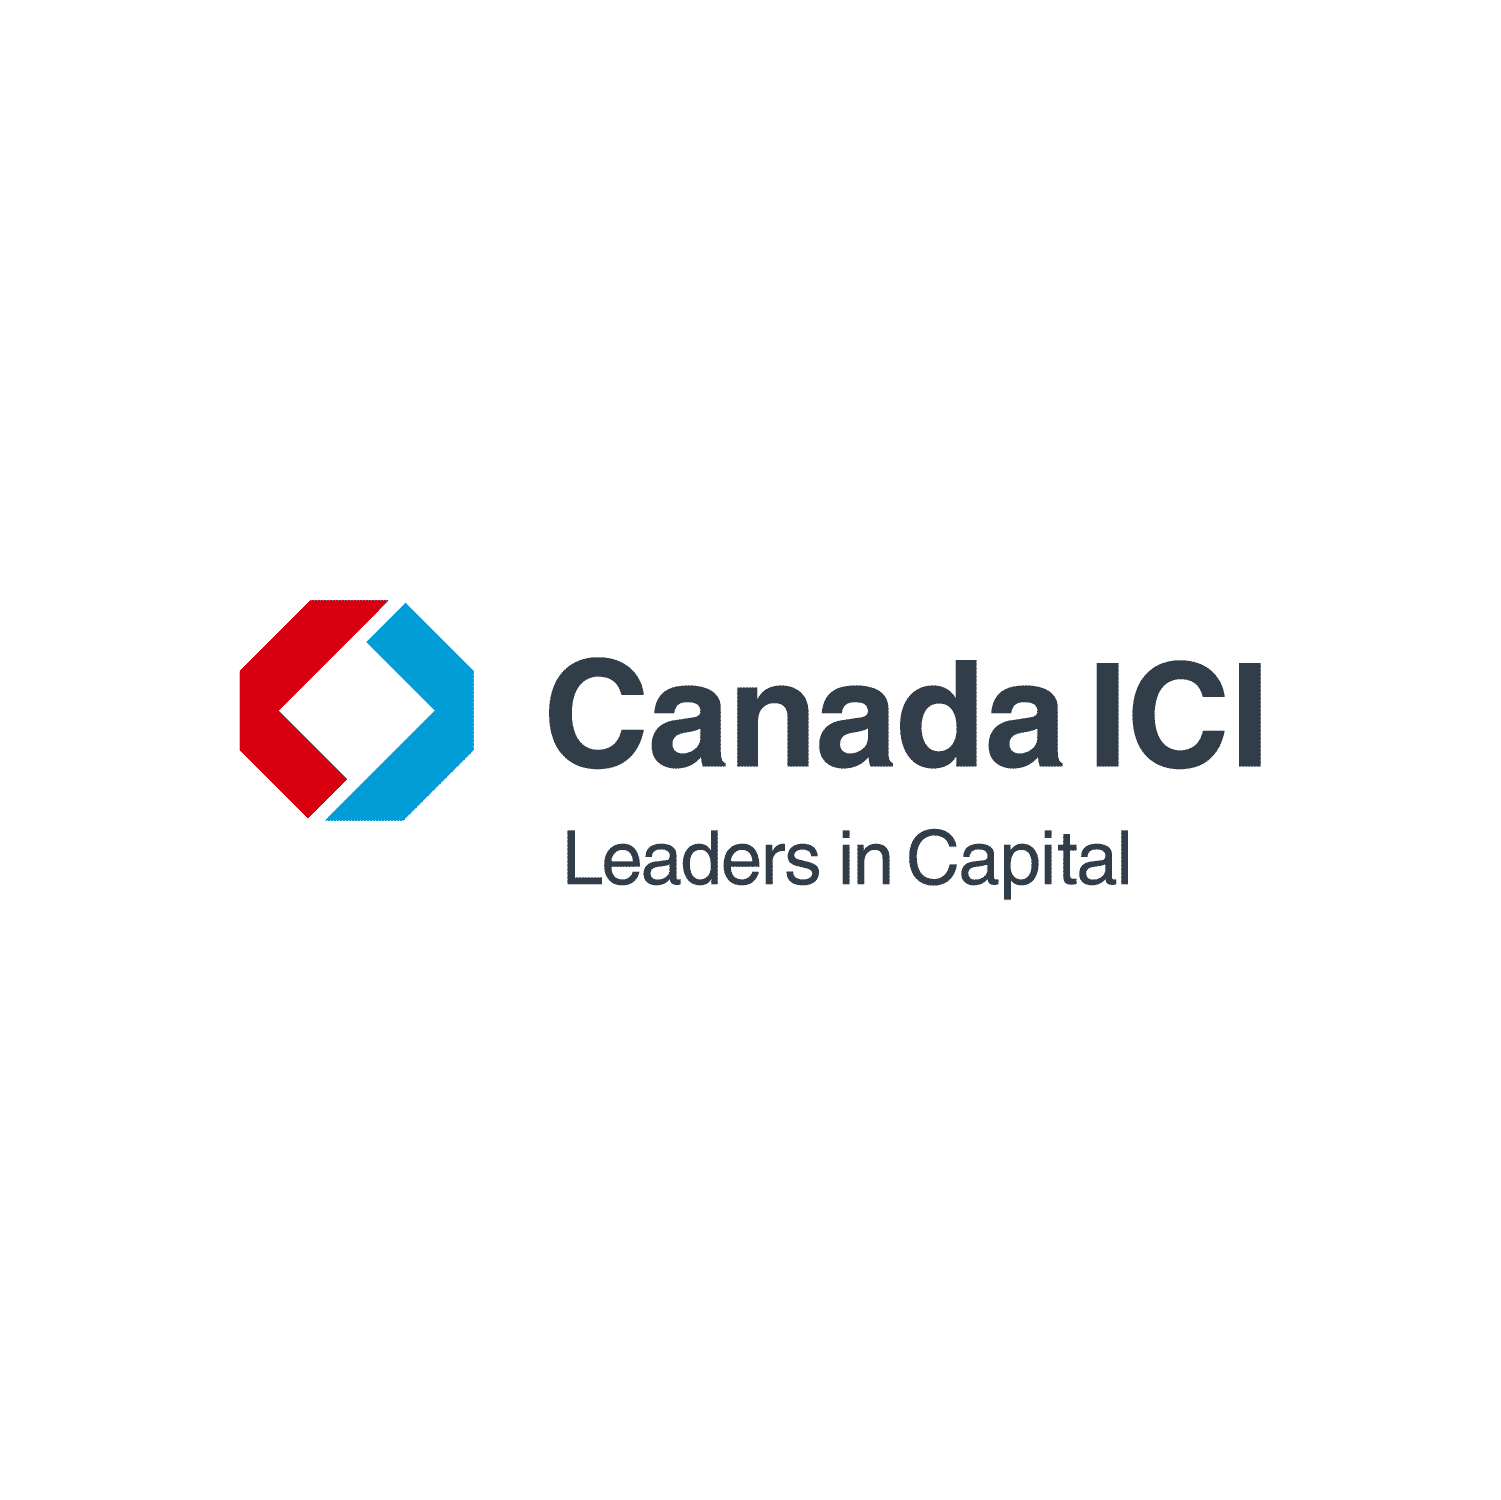 Canada-ICI-logo-RGB-tagline